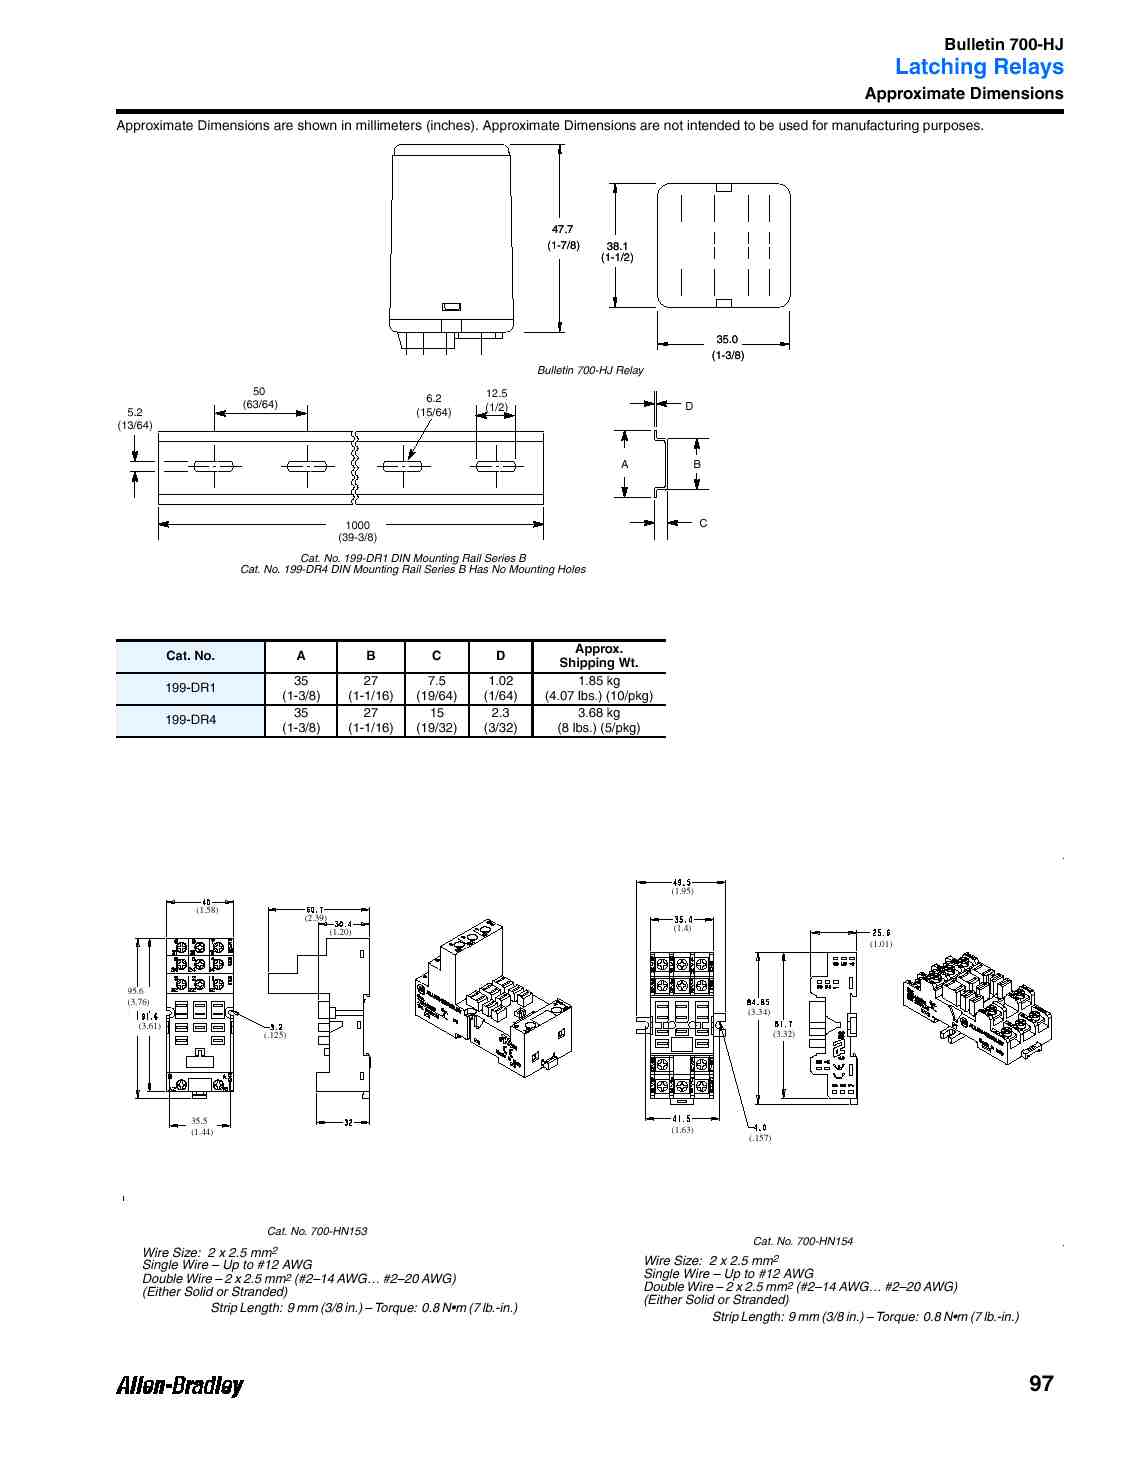 Allen Bradley 700 Relay Wiring Diagram - Wiring Diagram